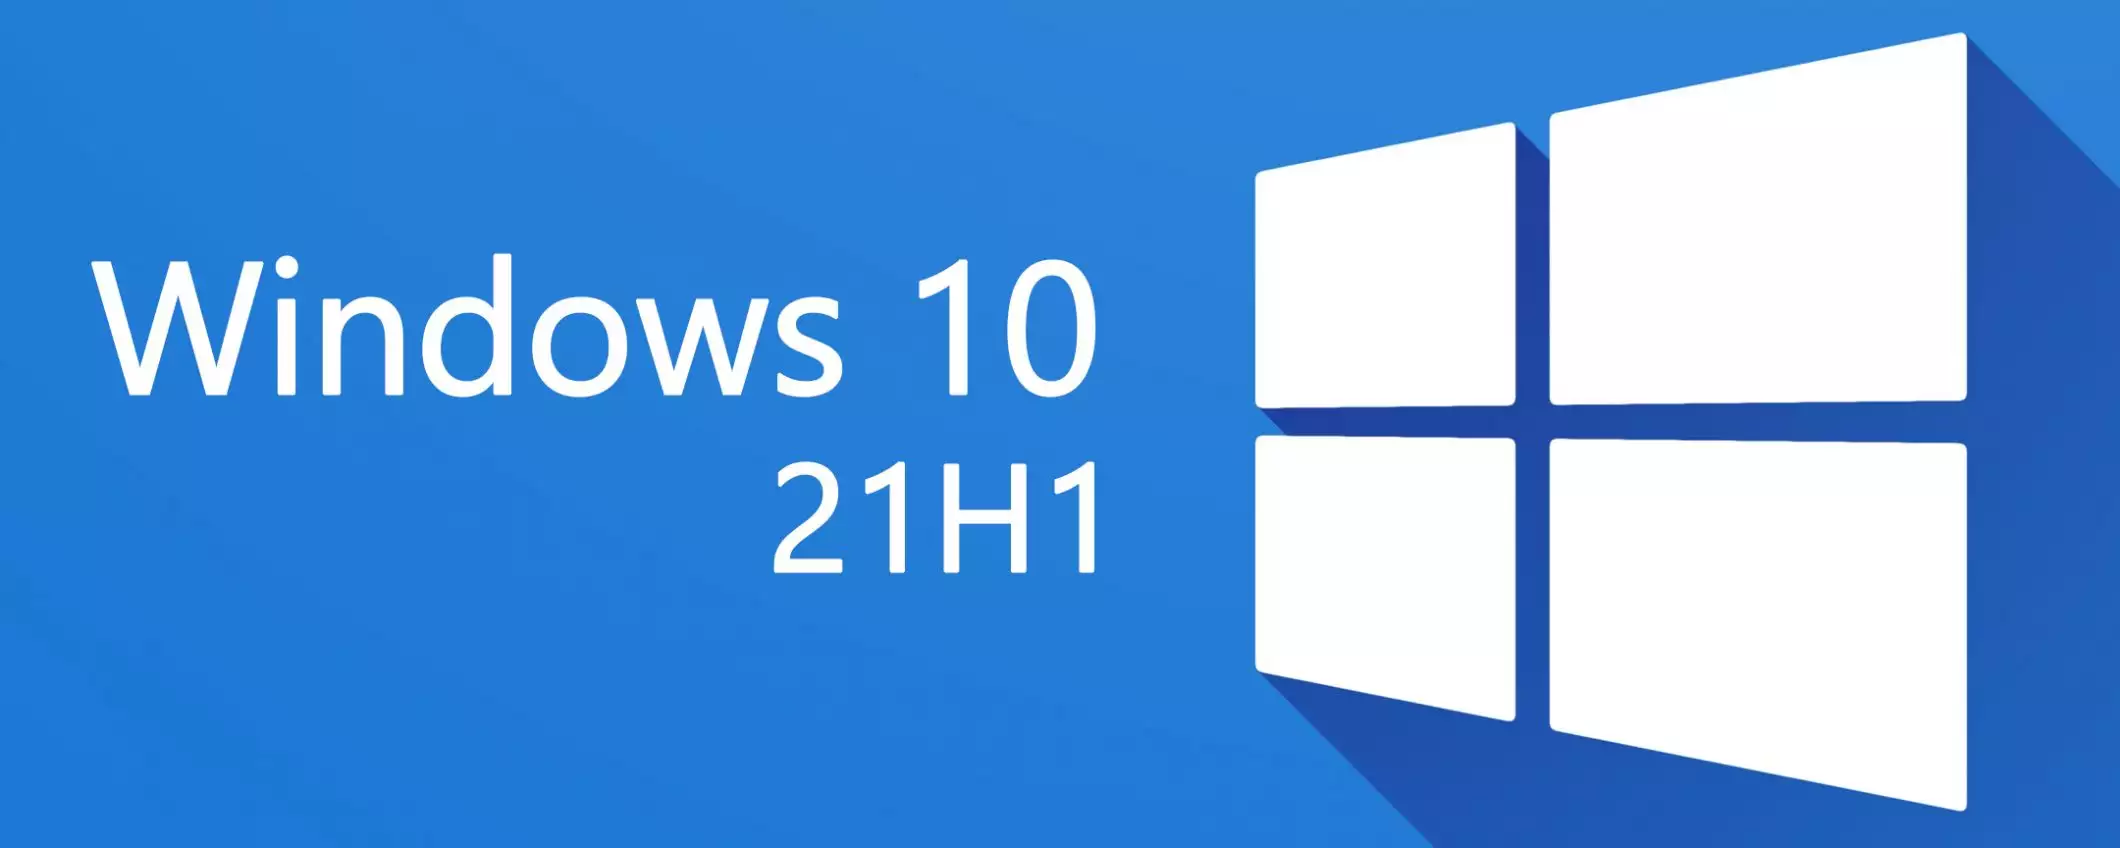 News e interessi anche per Windows 10 21H1 e 20H2